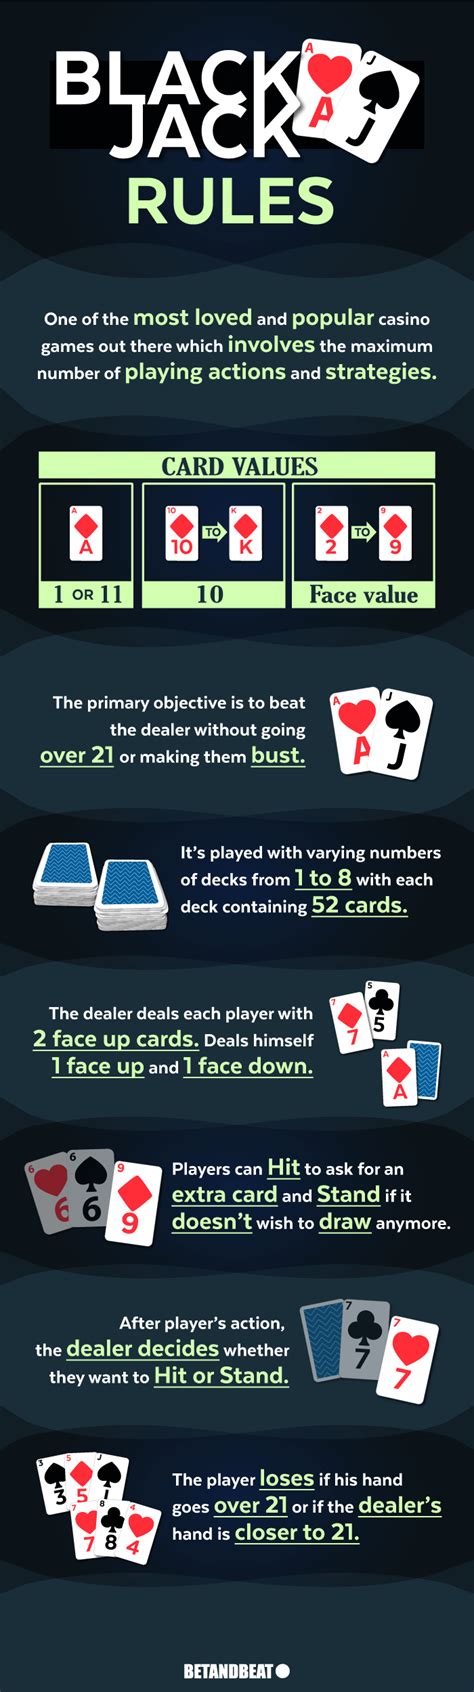 blackjack 21 dealer rules